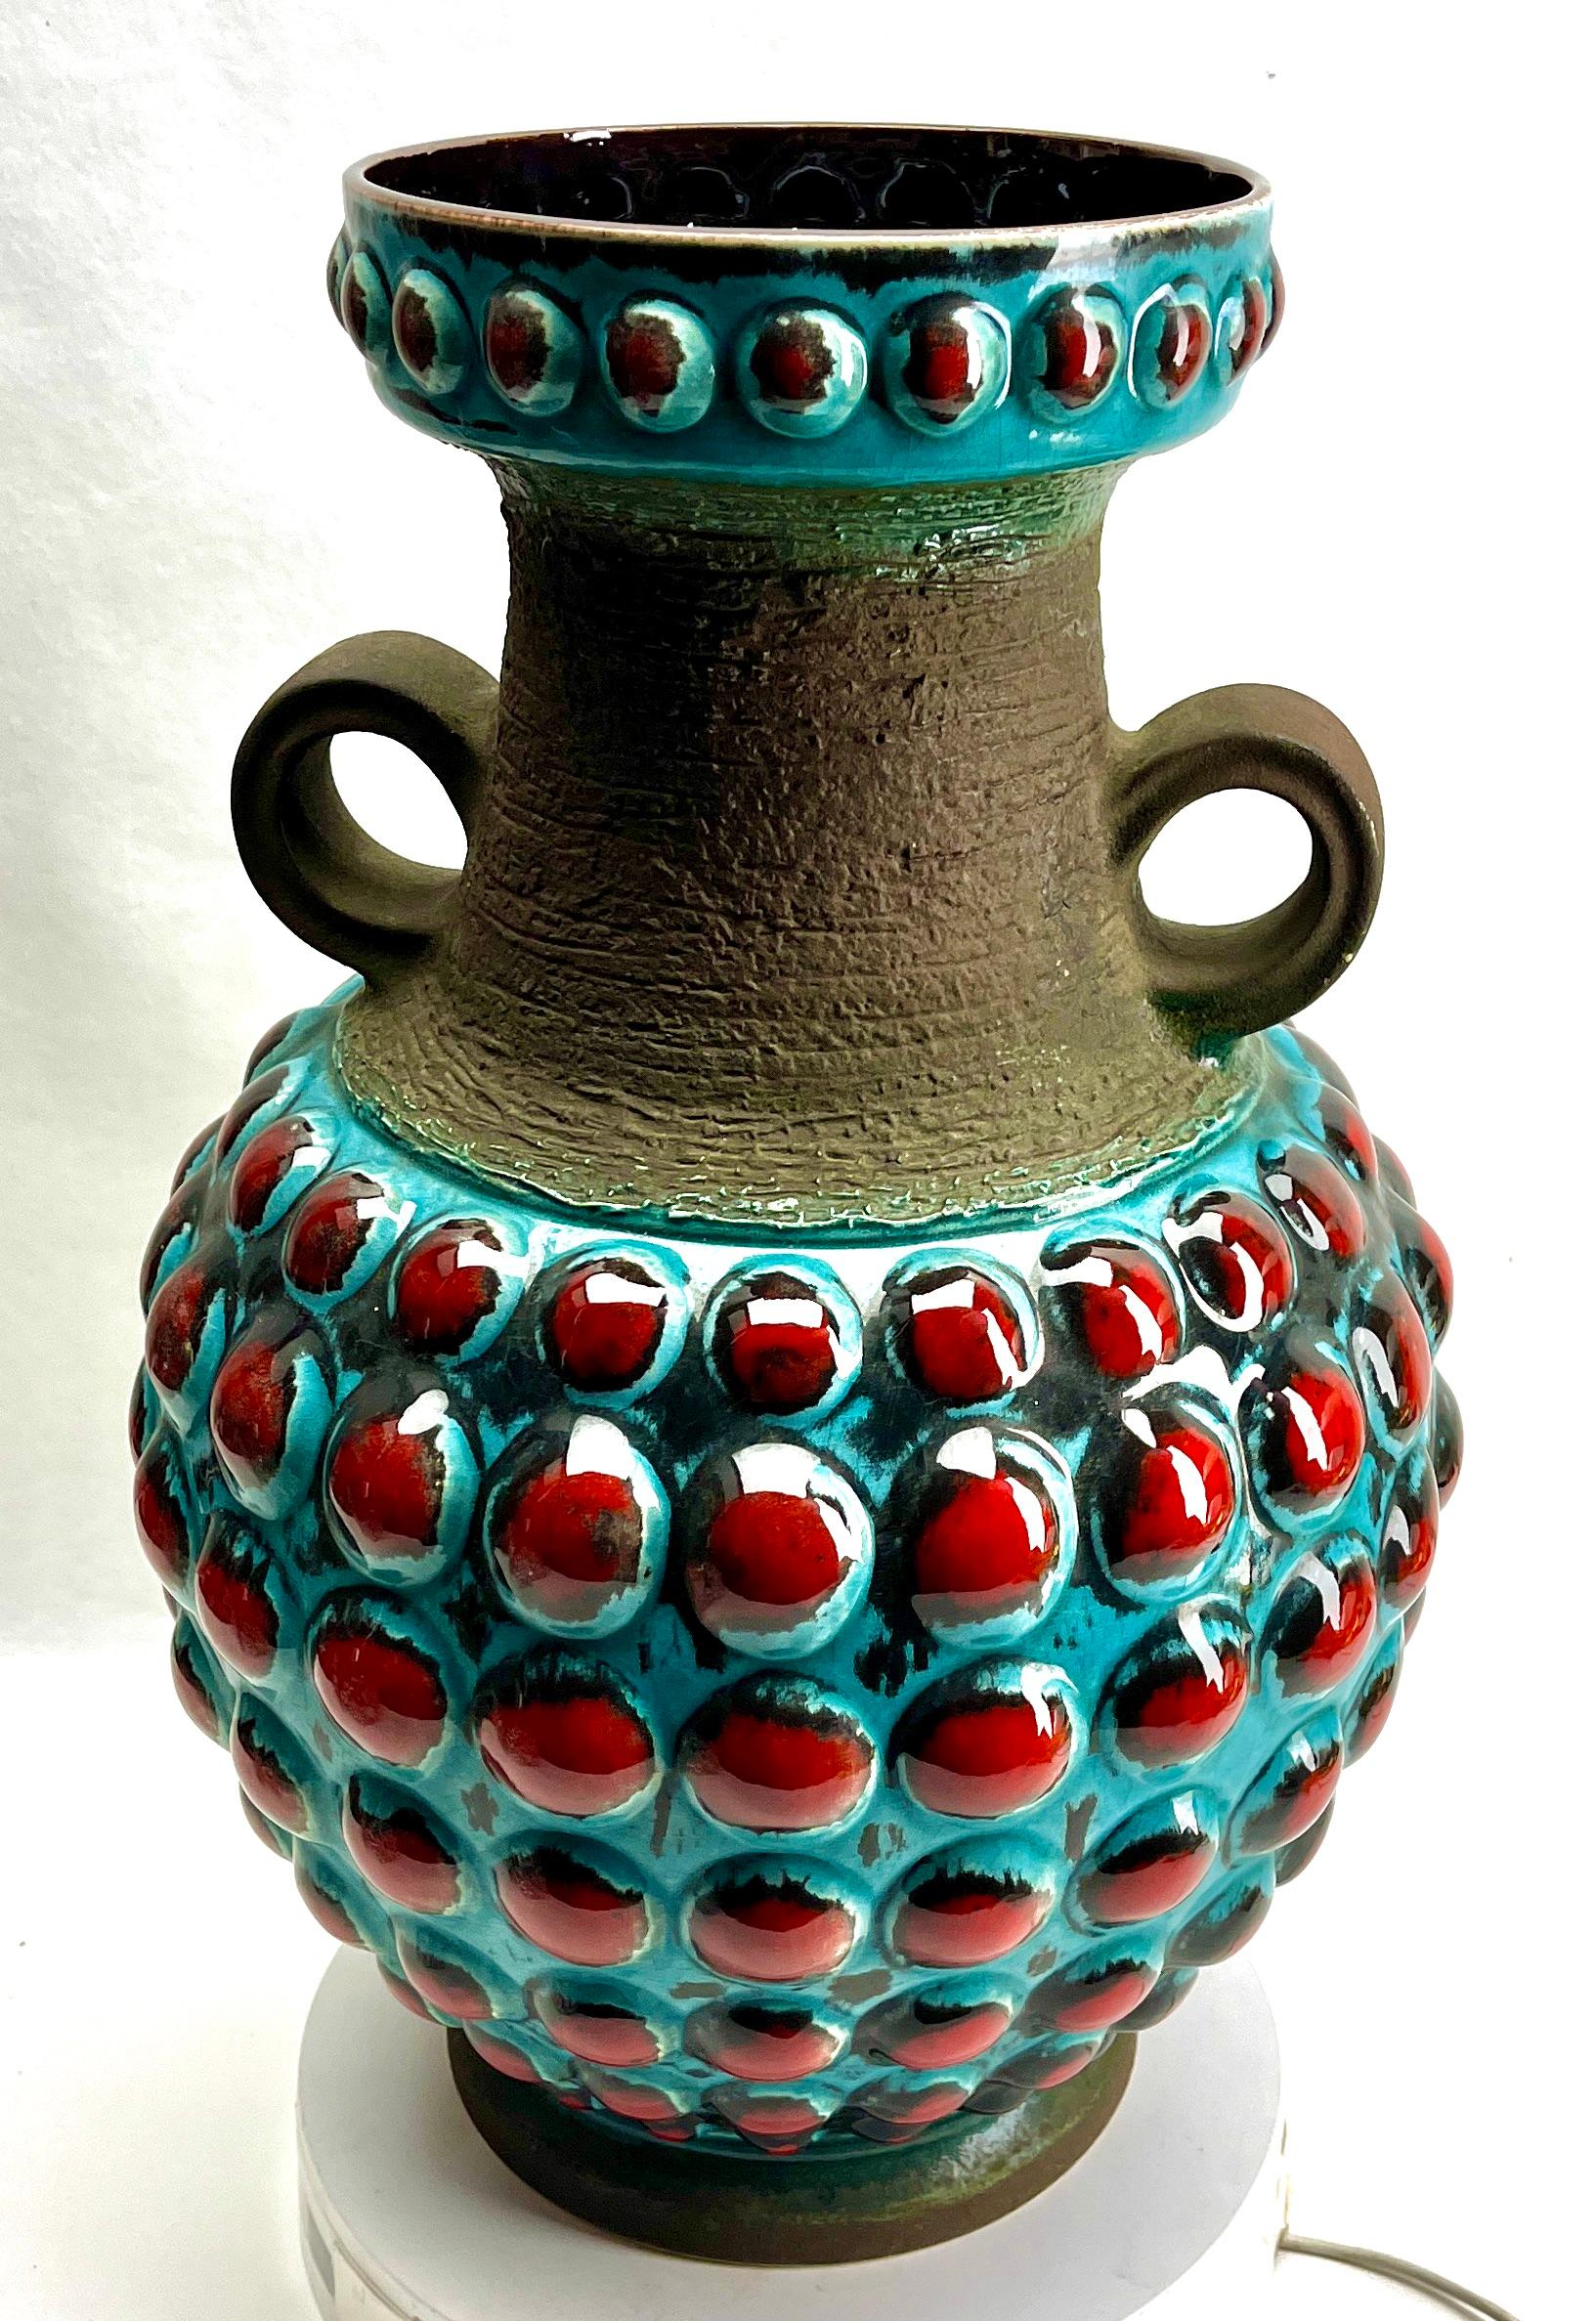 Ce vase Vintage By original a été produit dans les années 1970 en Allemagne. Il est fabriqué en céramique.
Le fond est marqué du numéro de série du vase 65-45 Handarbeit.
Un design direct et minimaliste de l'ère du design des années 1960. 
Super